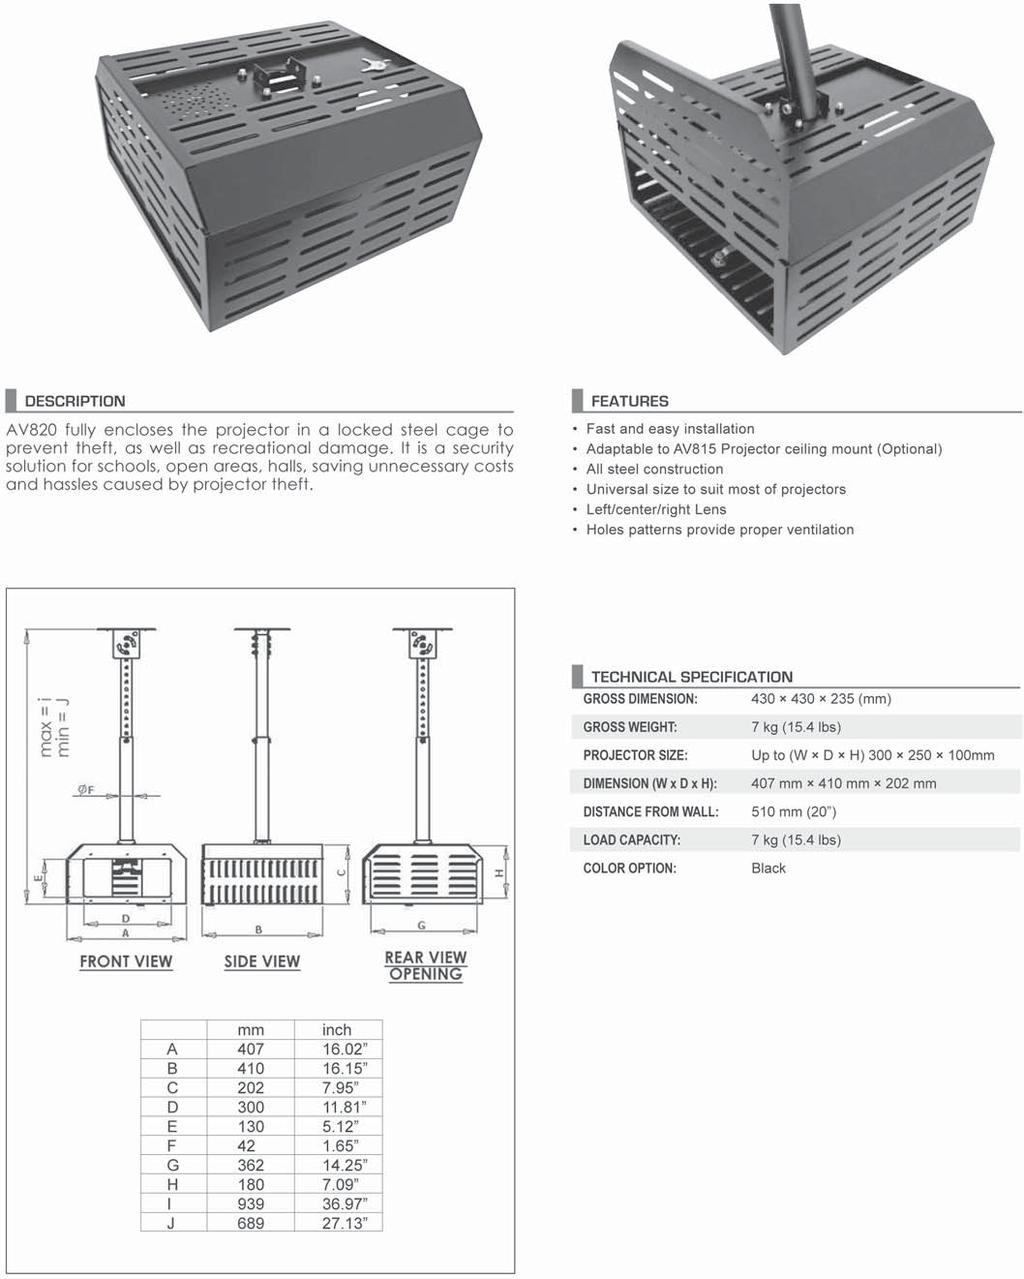 - Costruzione in acciaio - Dimensioni adatte per la maggior parte dei modelli sul mercato - Feritoie su tutti i lati per consentire un adeguato raffreddamento AV-820 Box di protezione per